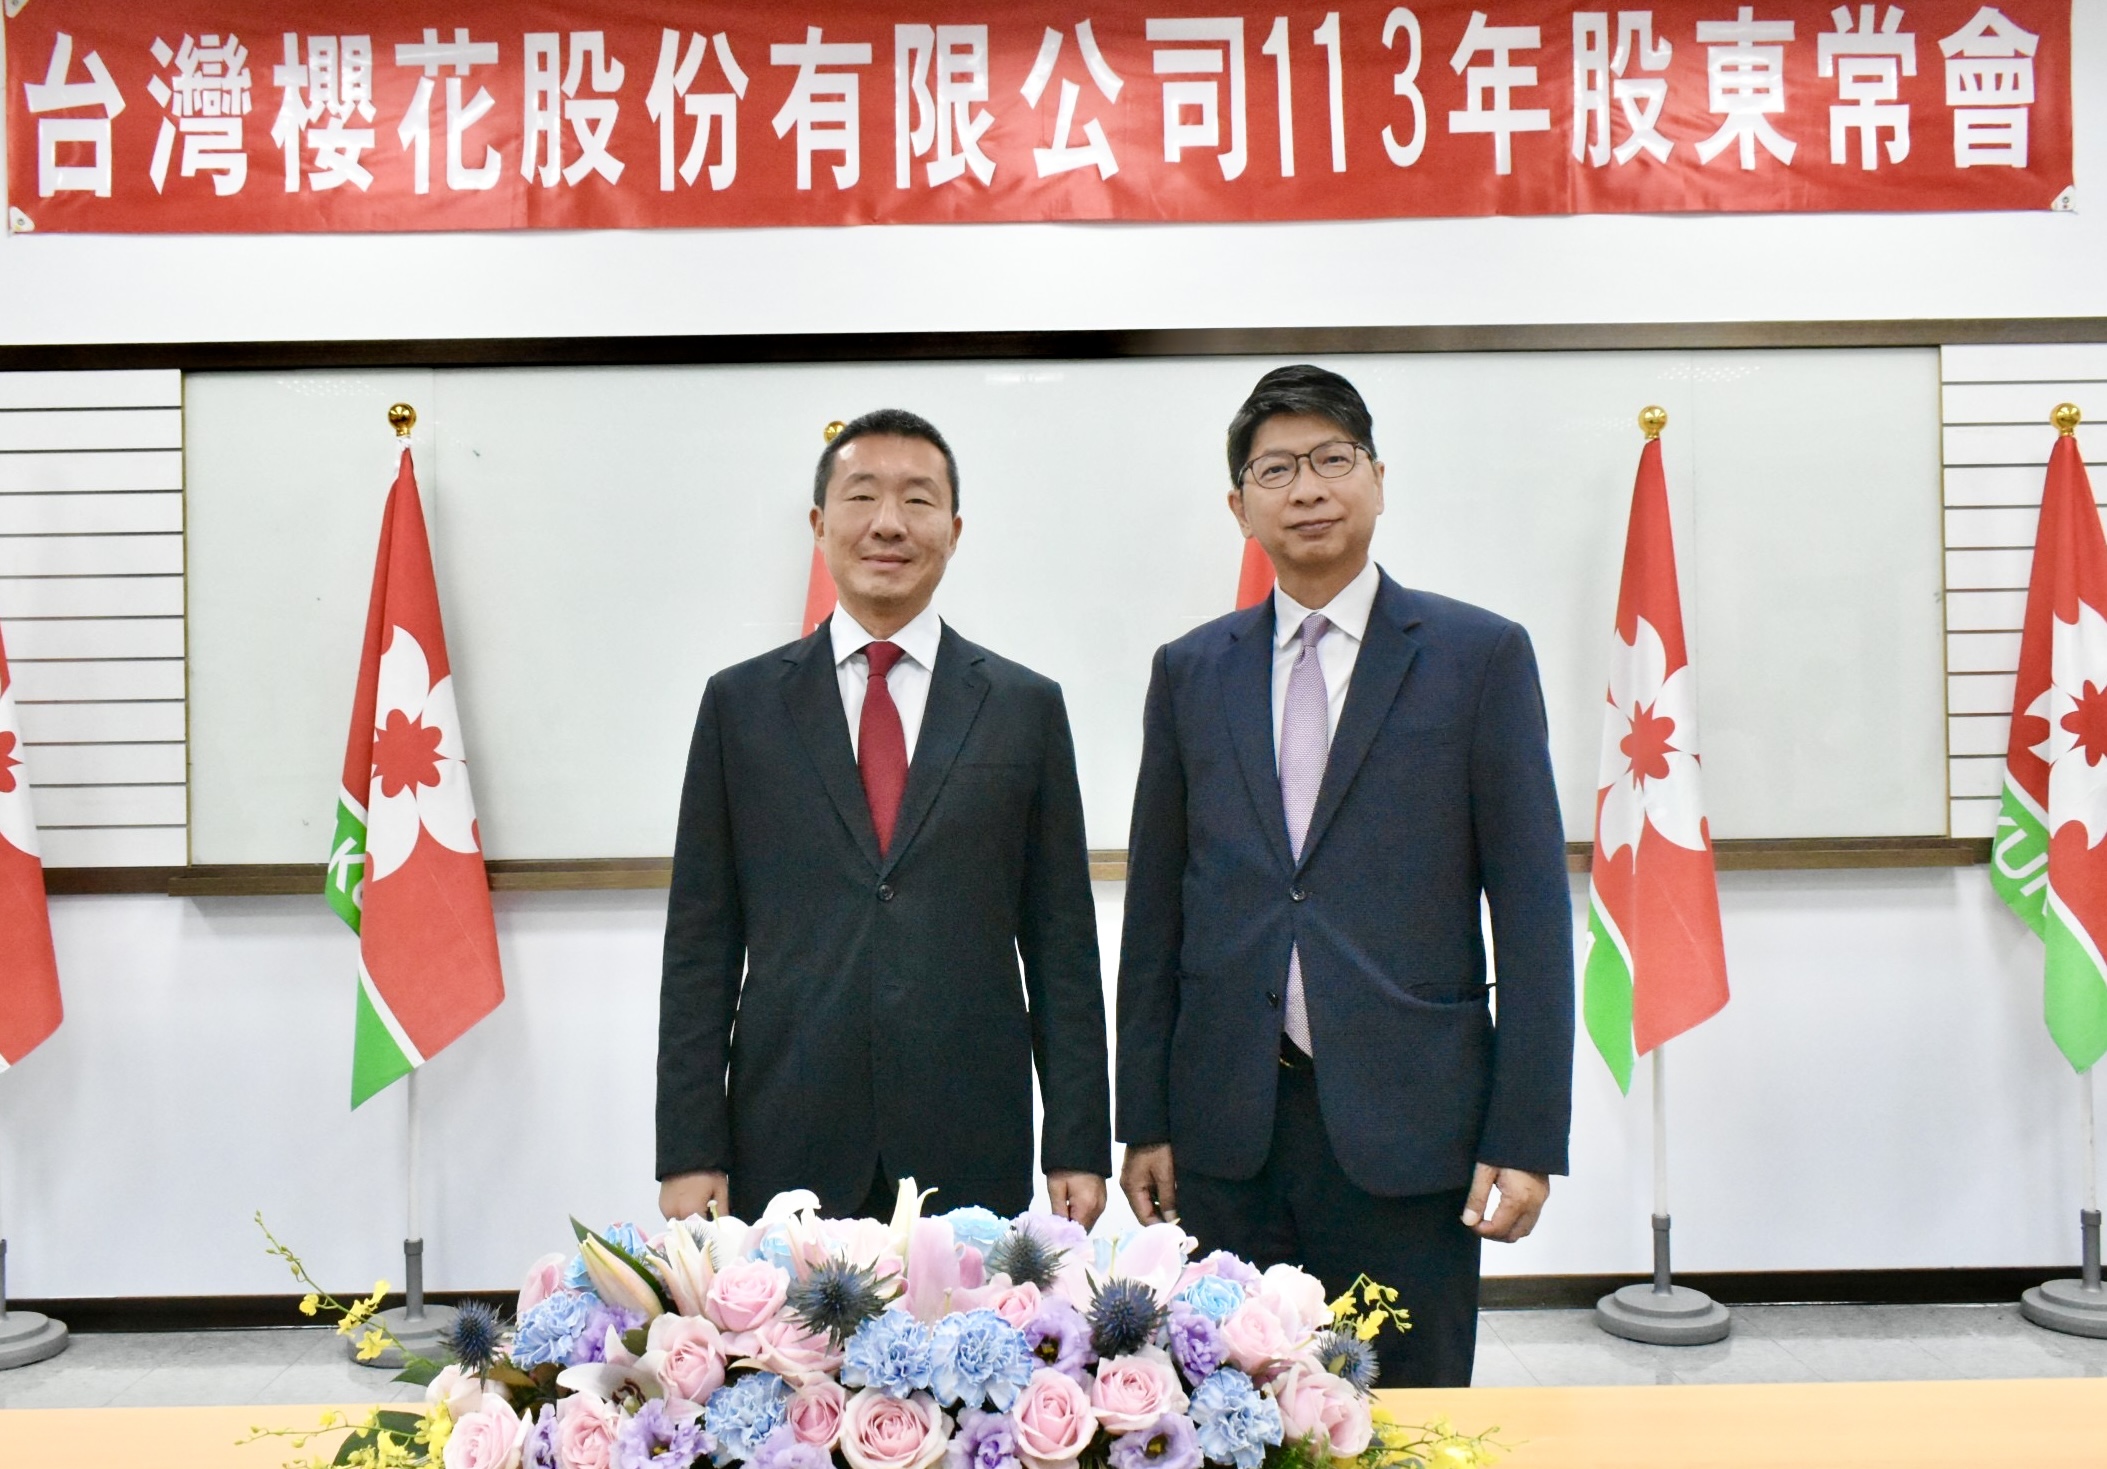 台湾樱花董事长张永杰(左)与总经理李惠恂(右)共同宣布今年是樱花Al元年。记者宋健生/摄影